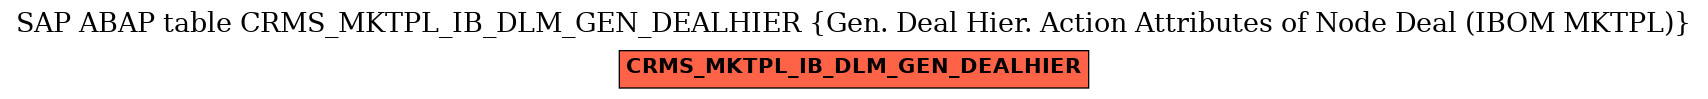 E-R Diagram for table CRMS_MKTPL_IB_DLM_GEN_DEALHIER (Gen. Deal Hier. Action Attributes of Node Deal (IBOM MKTPL))